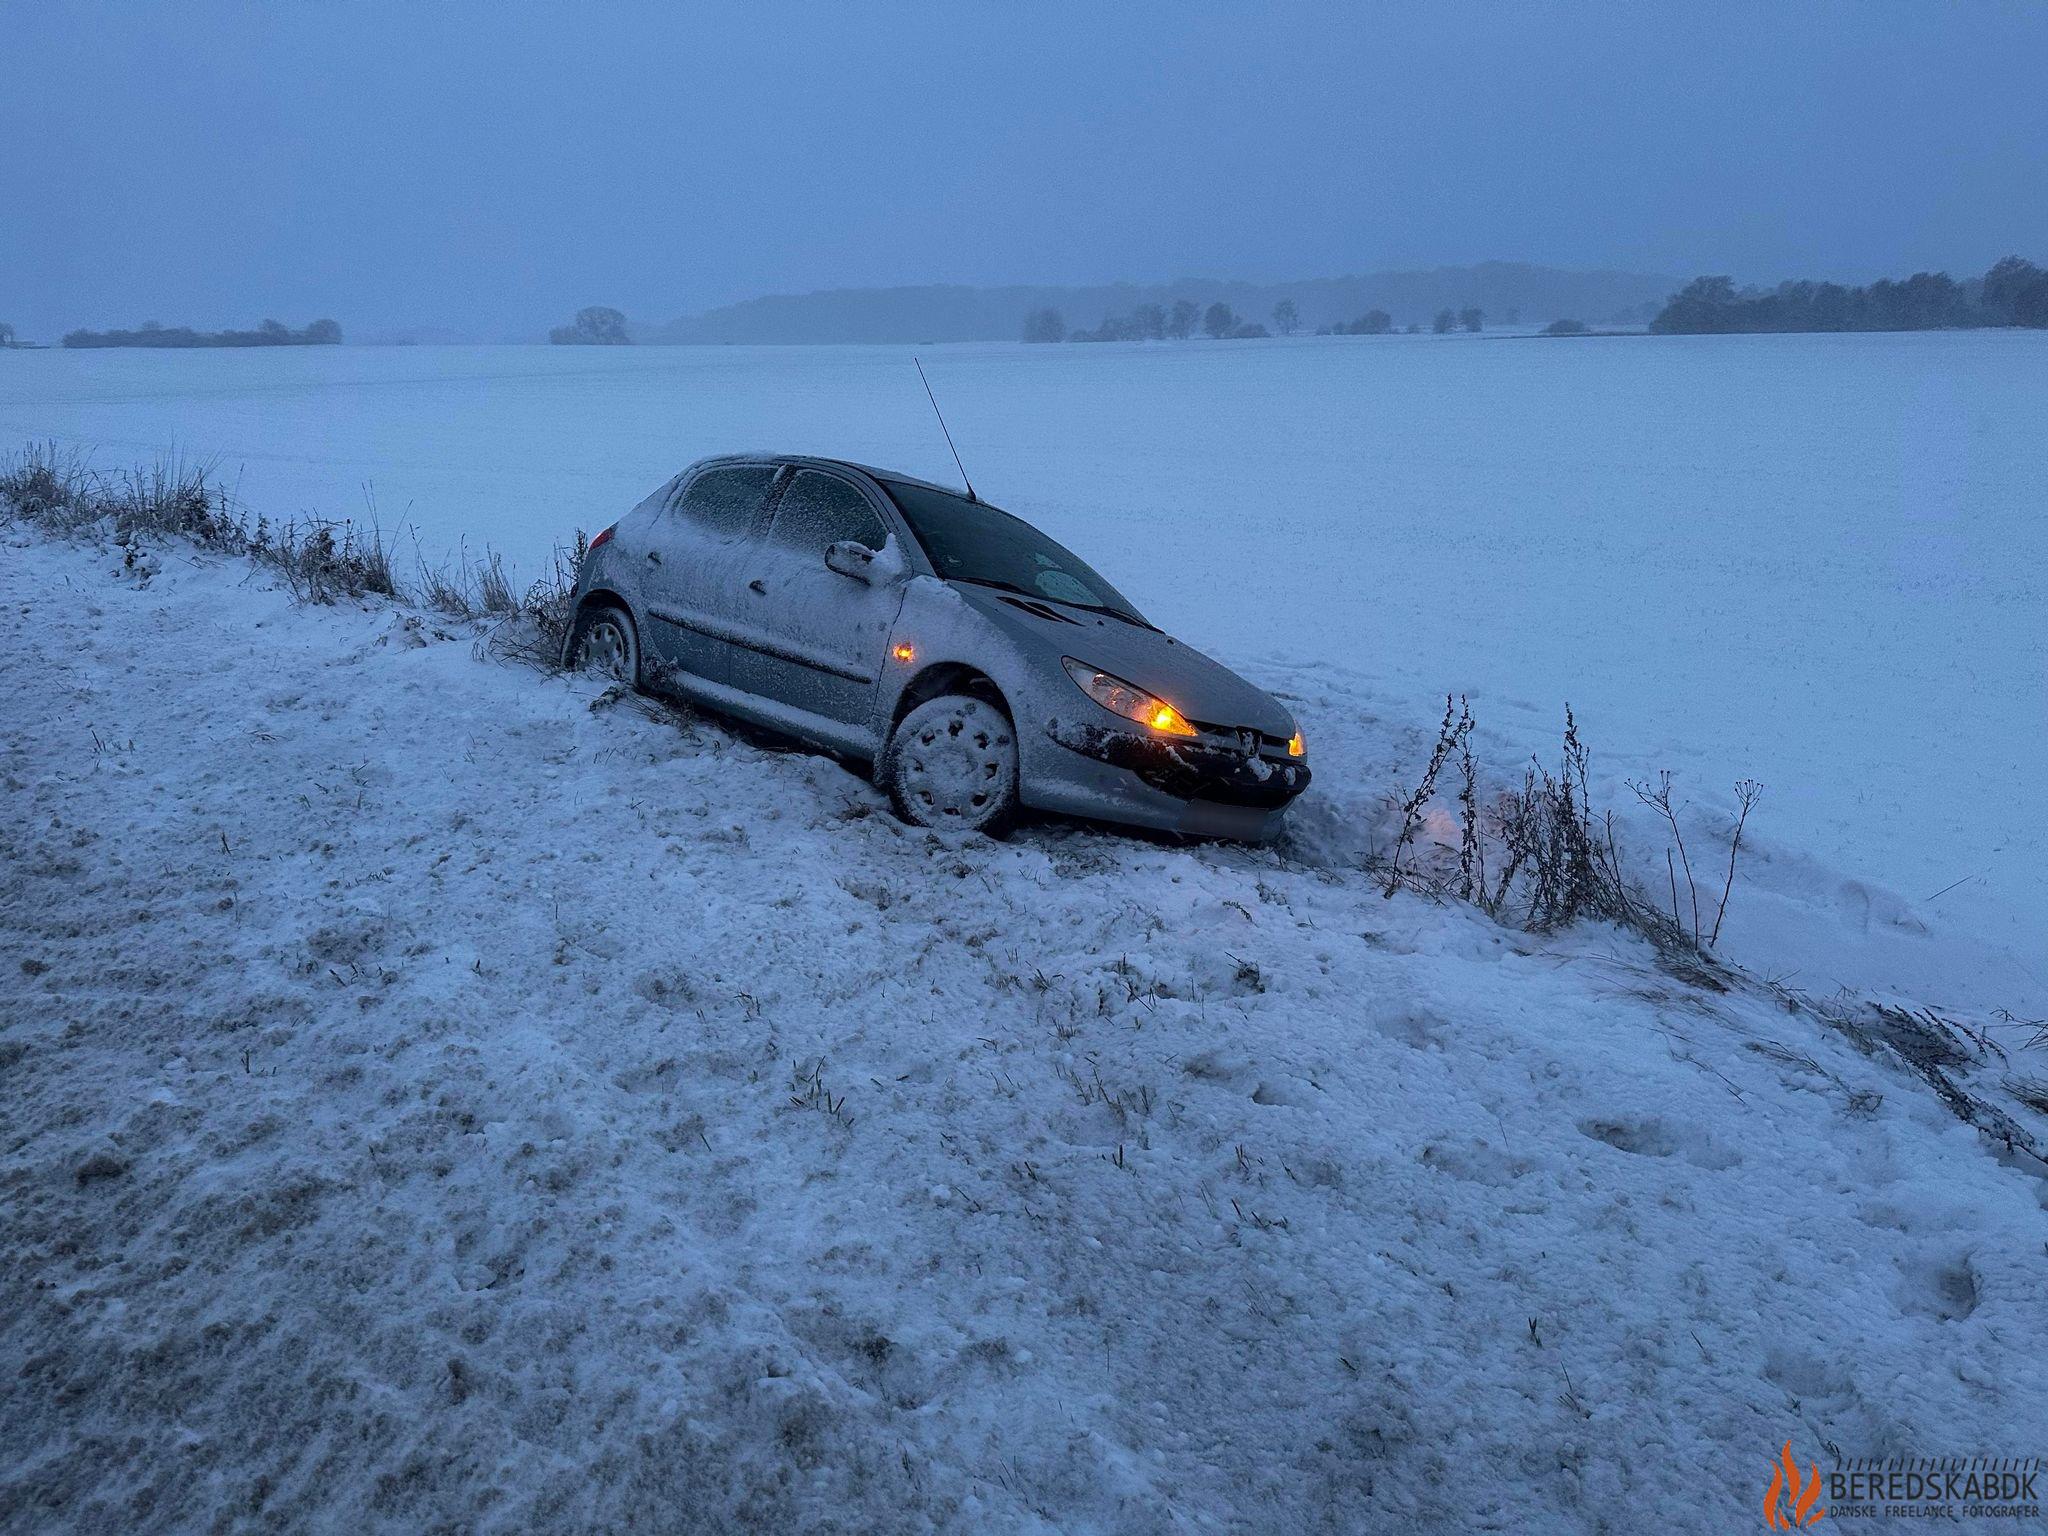 30/11-23 Uheld på Tindbækvej: Bil Endte i Grøft på Grund af Glatføre